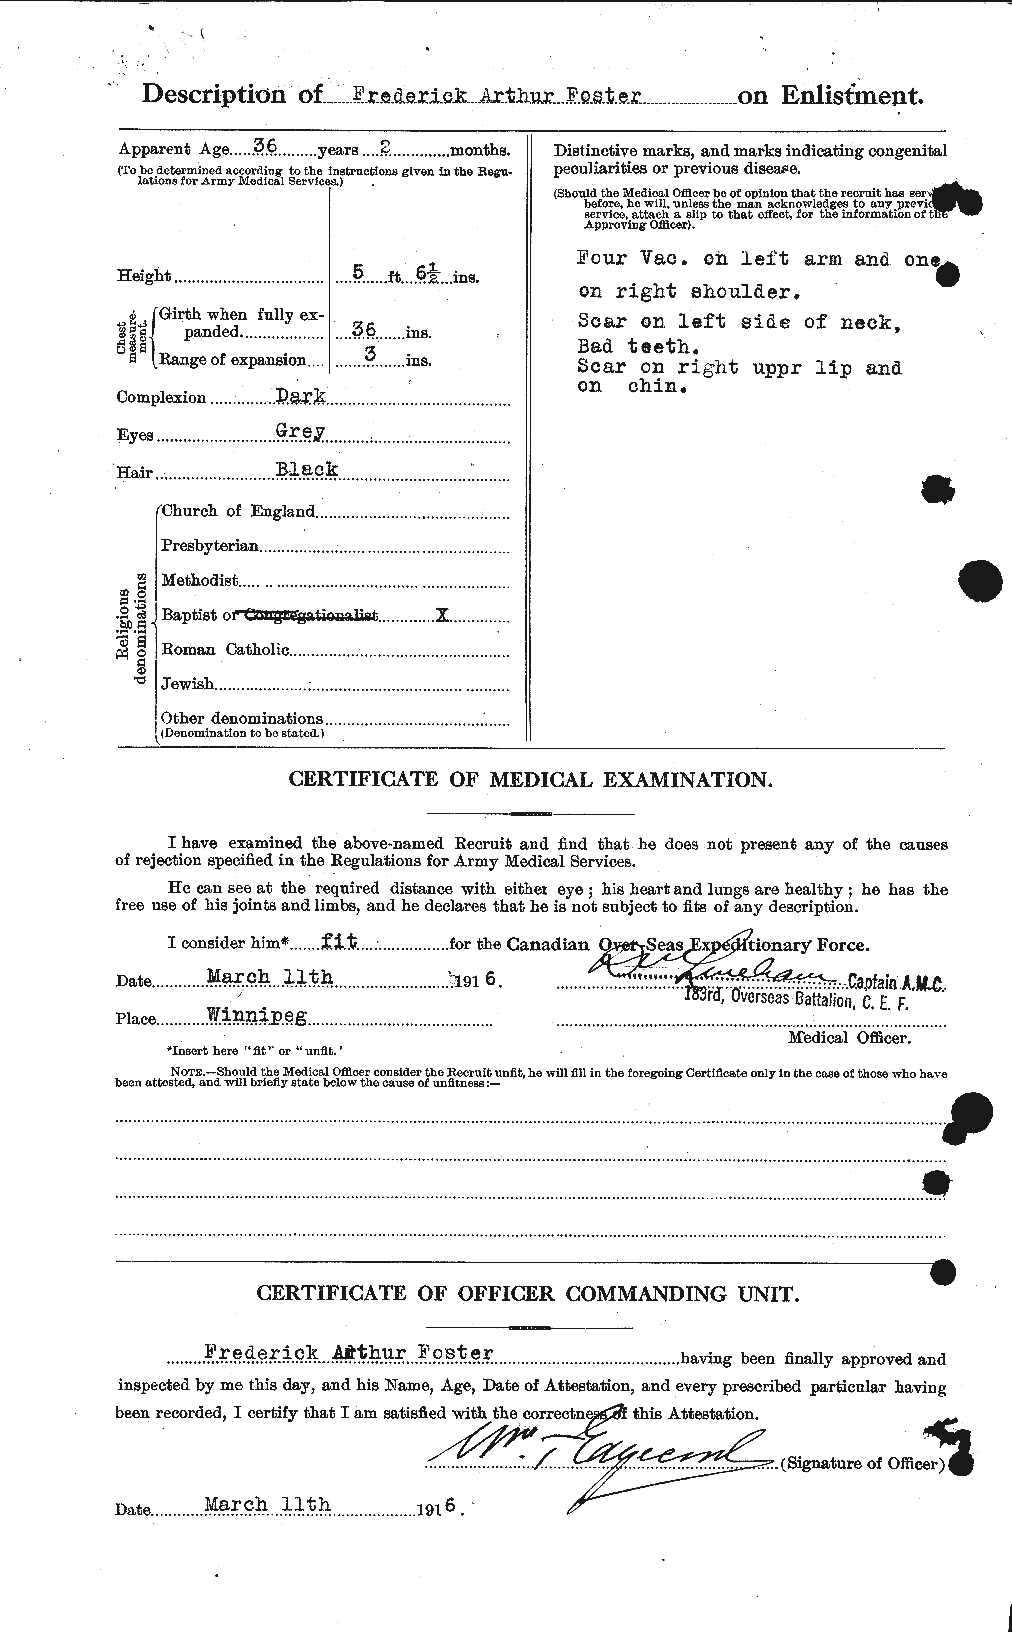 Dossiers du Personnel de la Première Guerre mondiale - CEC 330647b